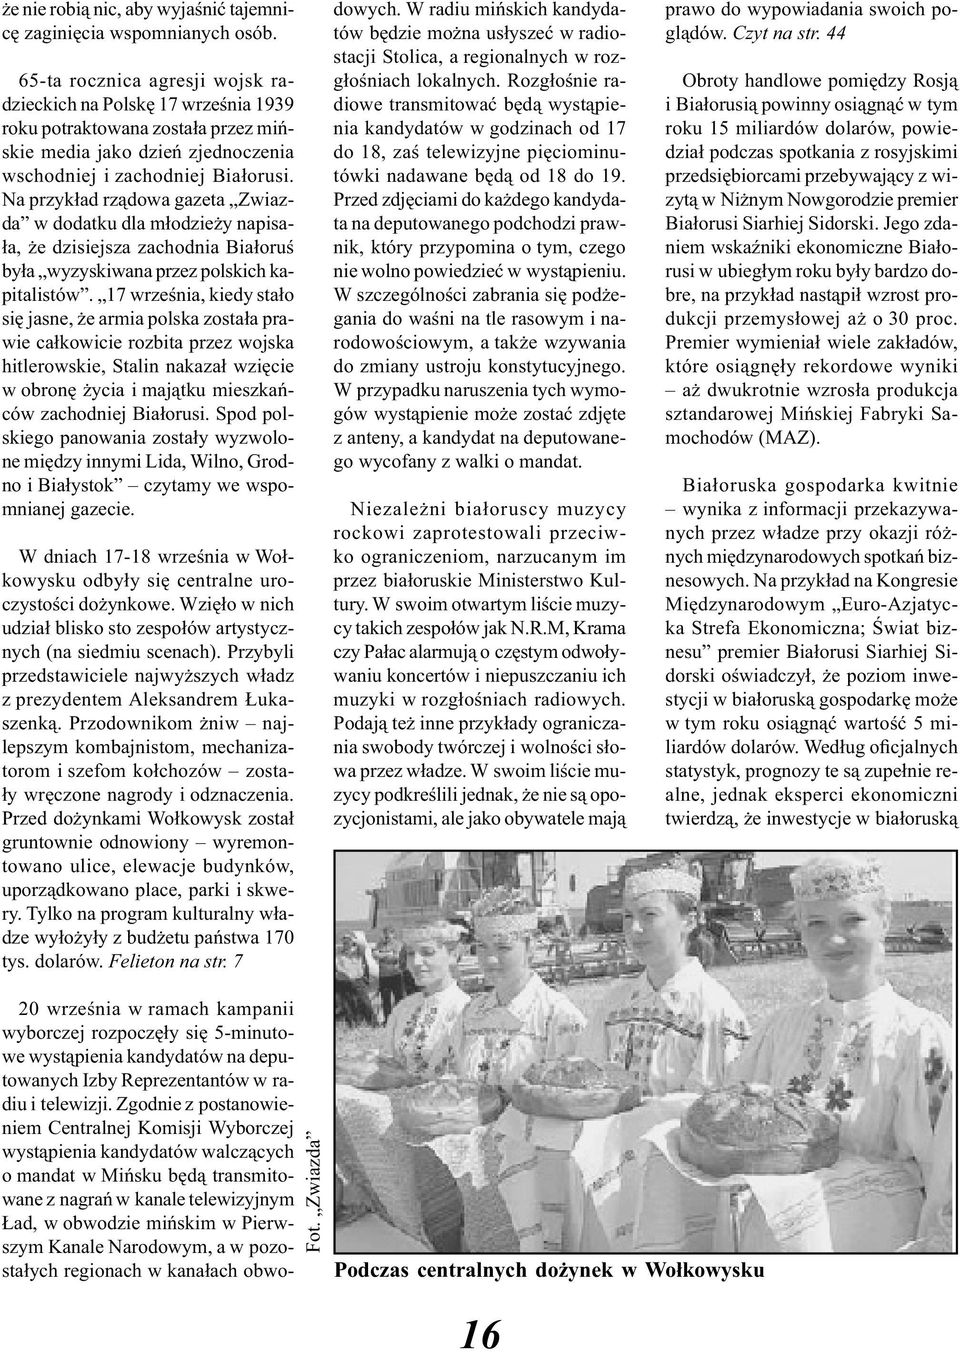 Na przykład rządowa gazeta Zwiazda w dodatku dla młodzieży napisała, że dzisiejsza zachodnia Białoruś była wyzyskiwana przez polskich kapitalistów.